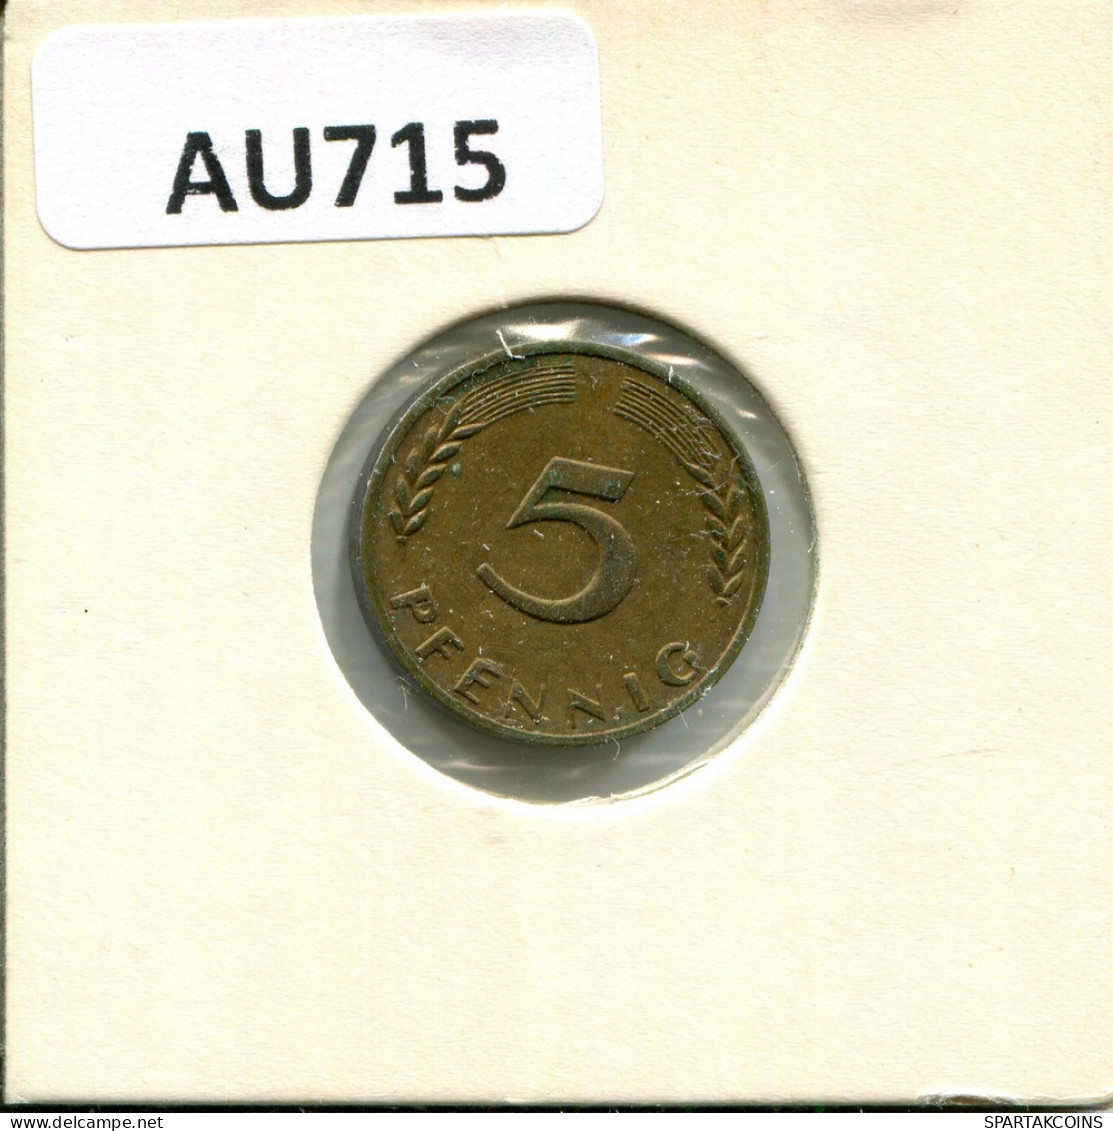 5 PFENNIG 1950 WEST & UNIFIED GERMANY Coin #AU715.U - 5 Pfennig